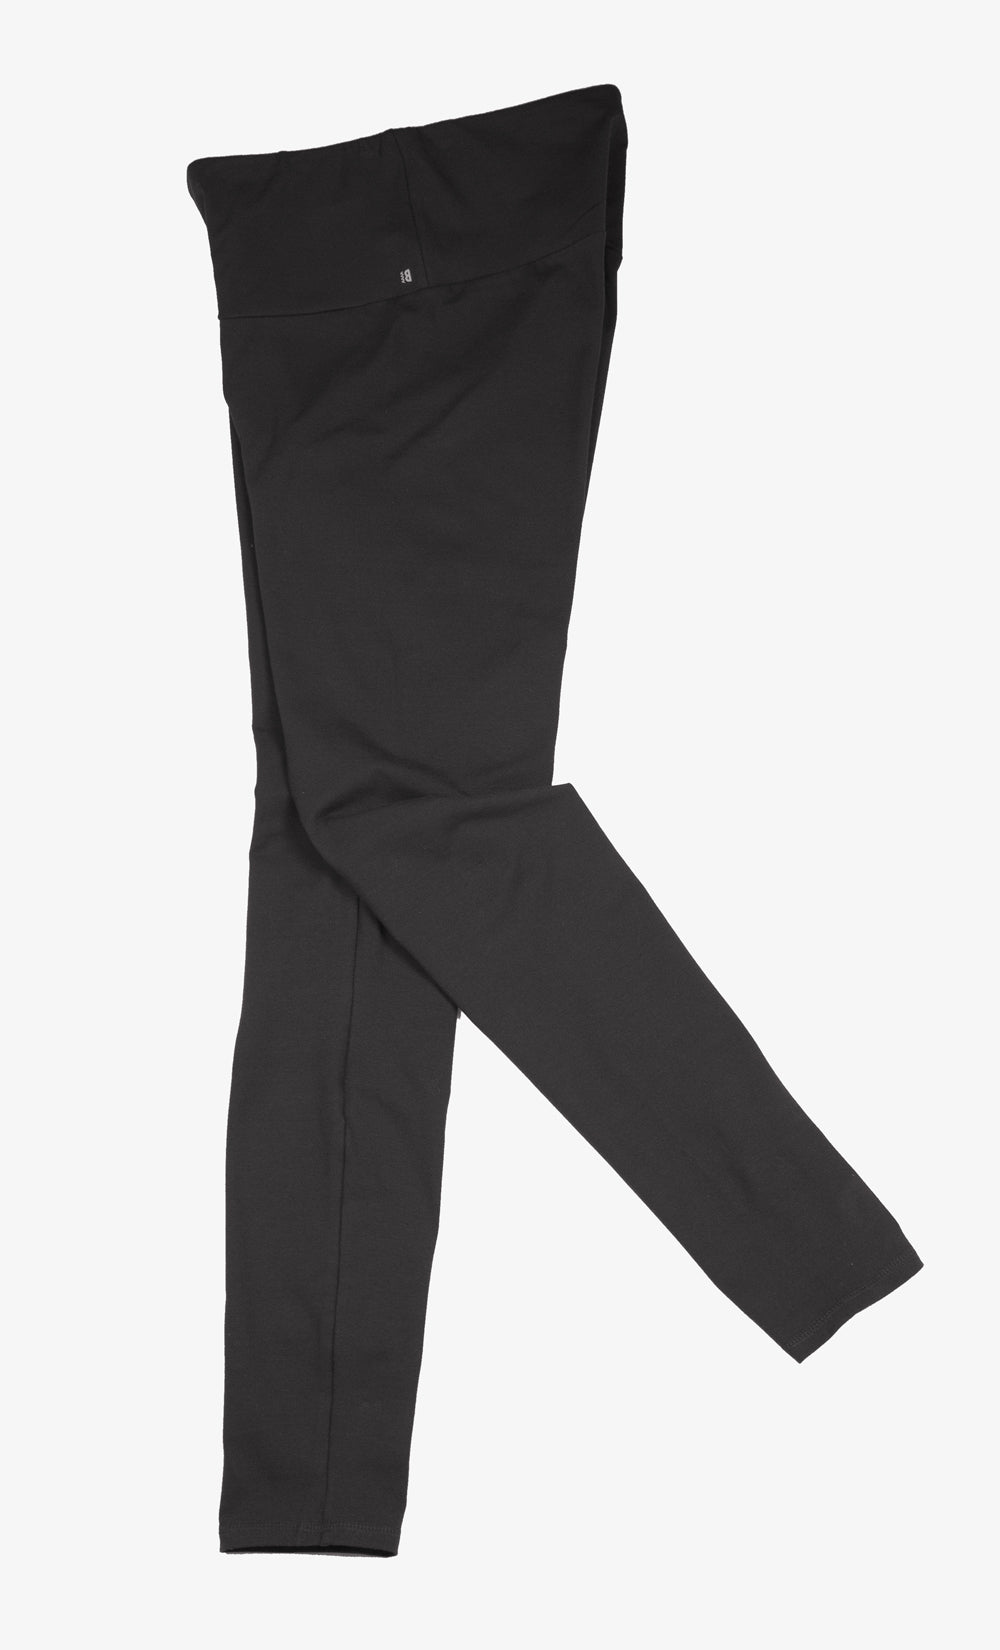 Leggings Femme Noir -  Taille Haute